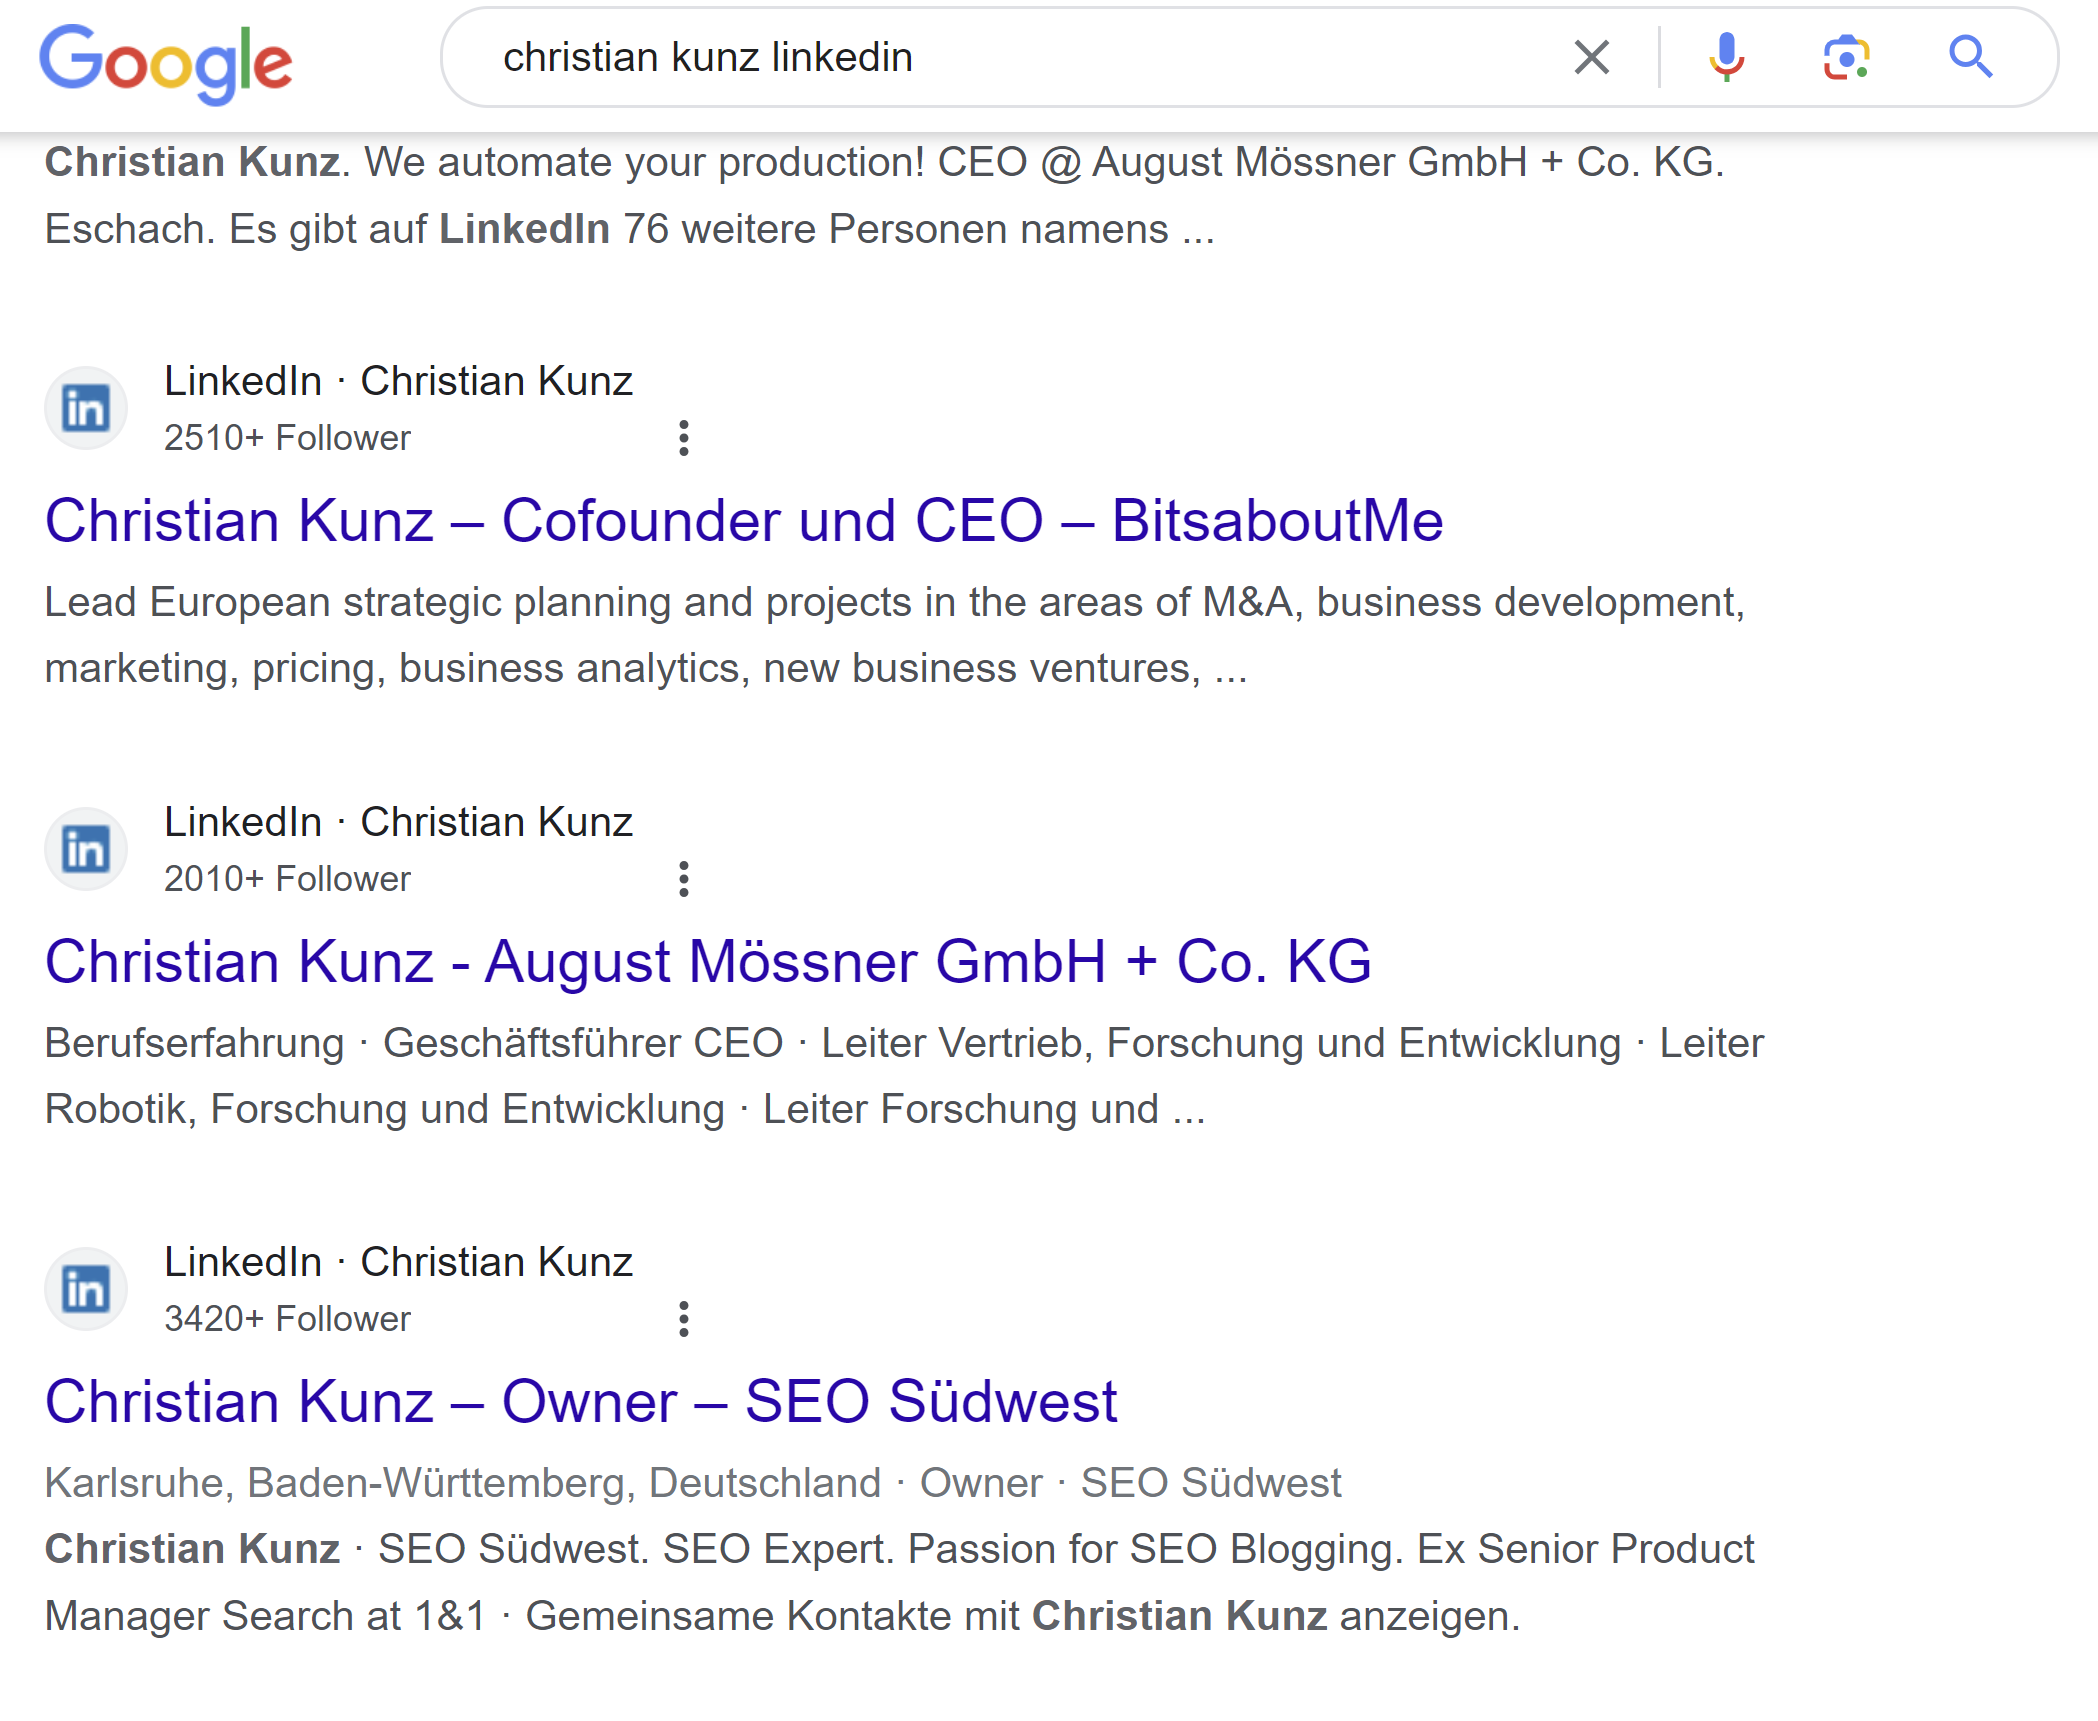 Suchergebnisse für 'Christian Kunz LinkedIn' auf Google